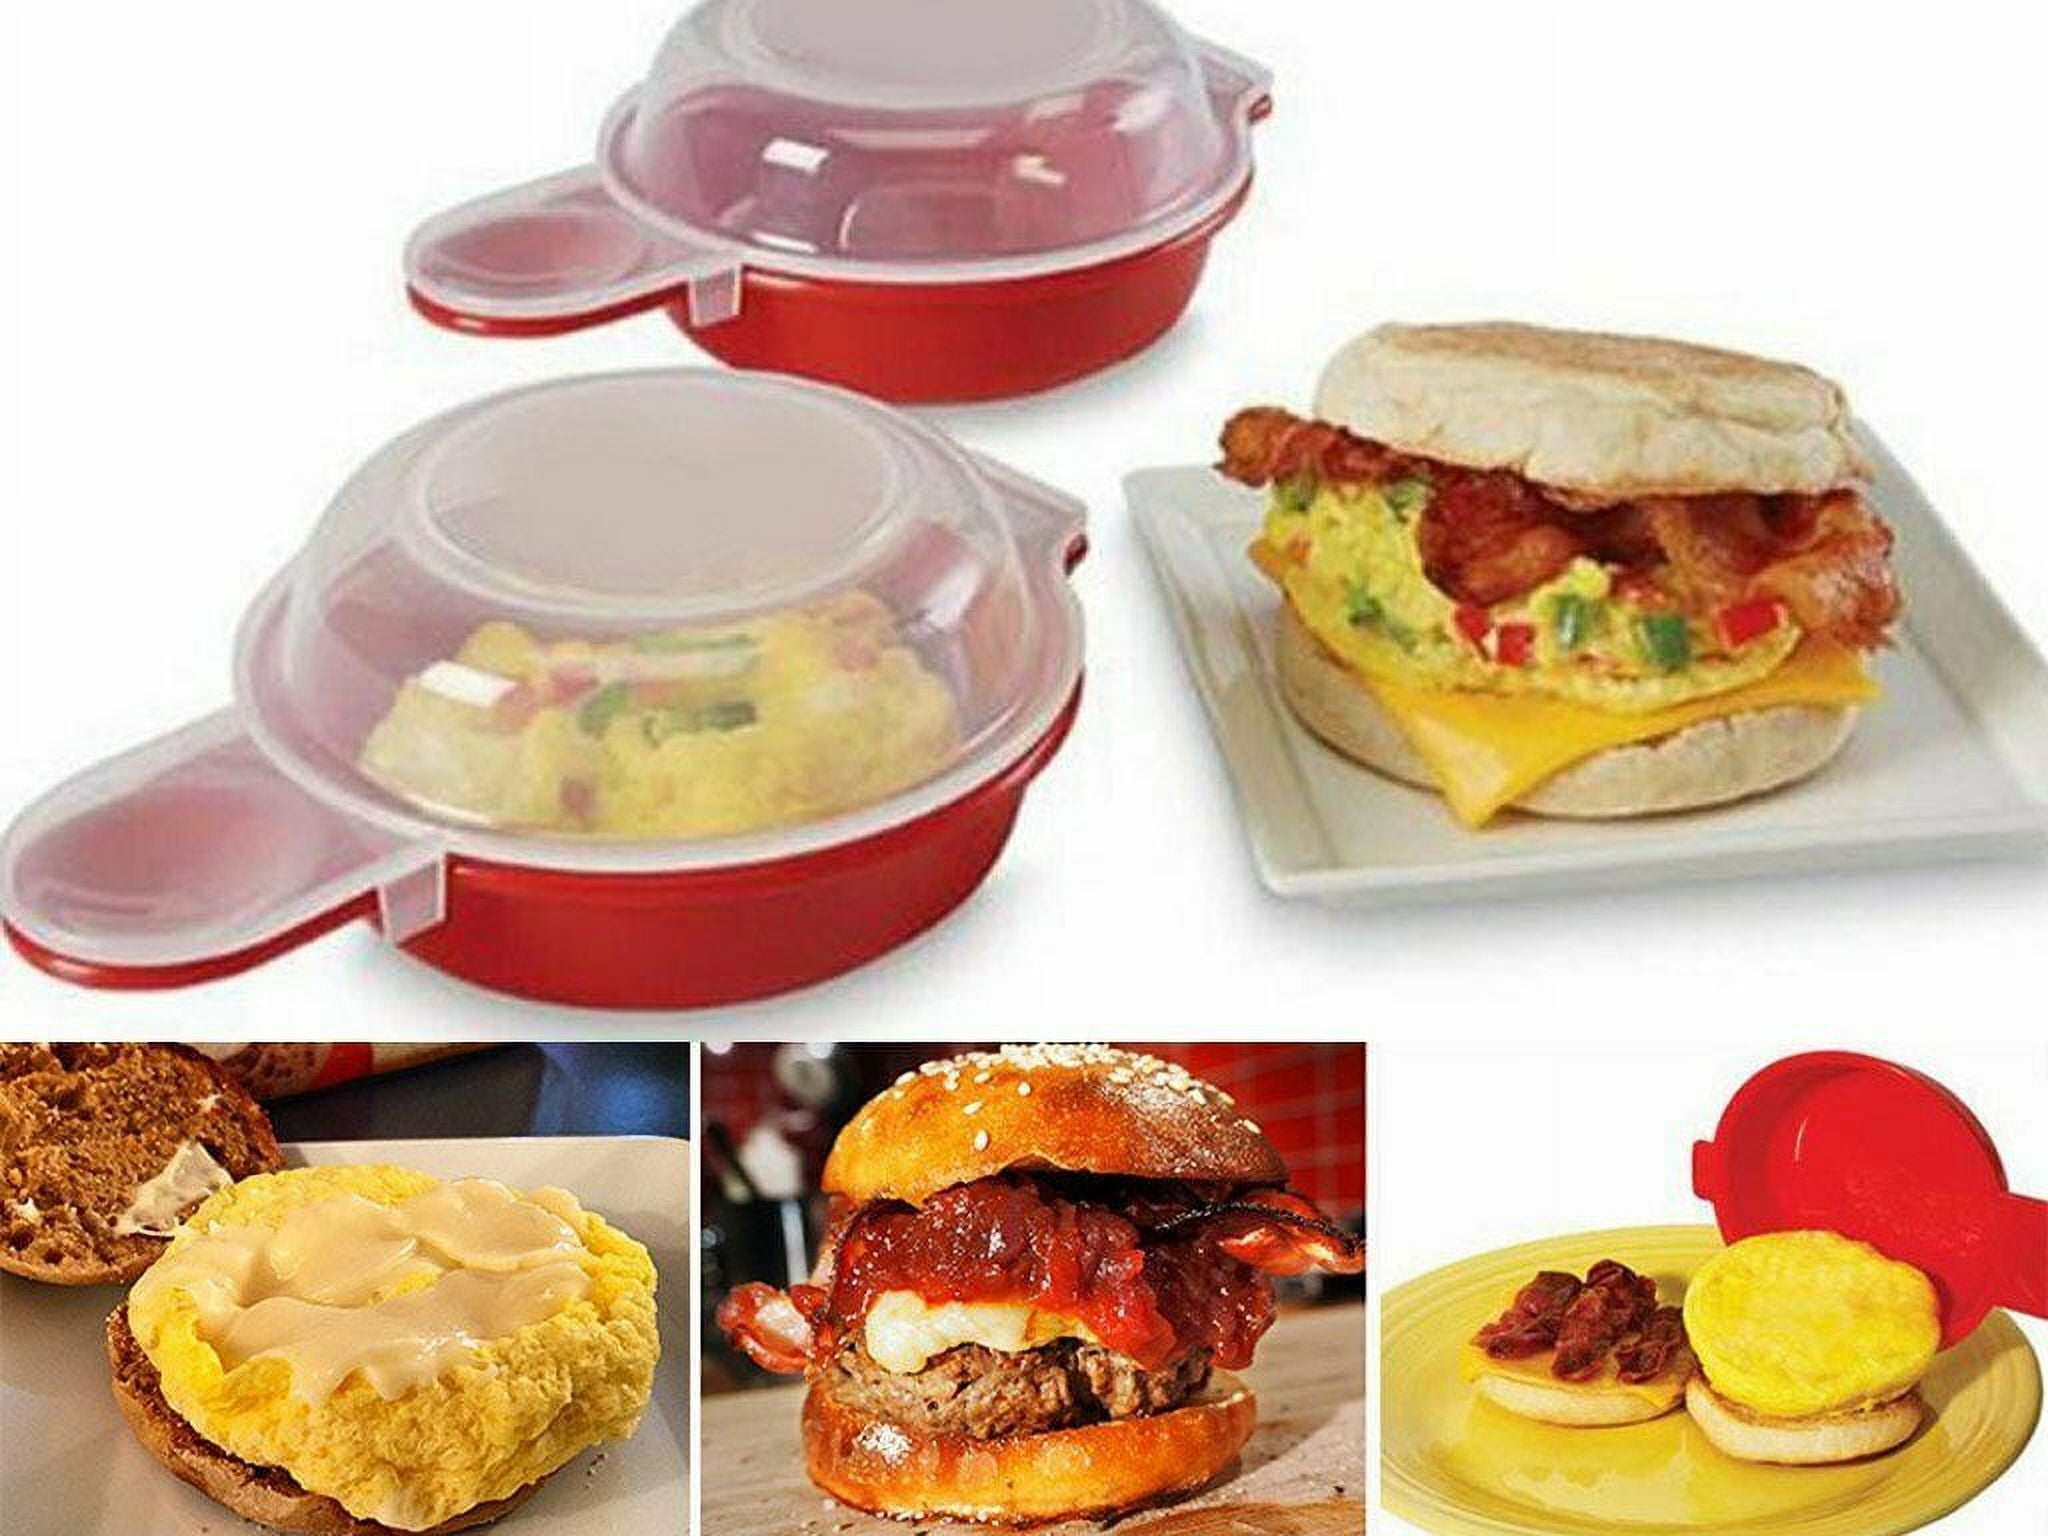 Microwave Egg Cooker for Sandwiches & Omelets – BPA-Free Microwave Egg  Poacher, Fried Egg Maker, Omelet Maker, & Scrambled Egg Cooker – Cooks 2-3  eggs